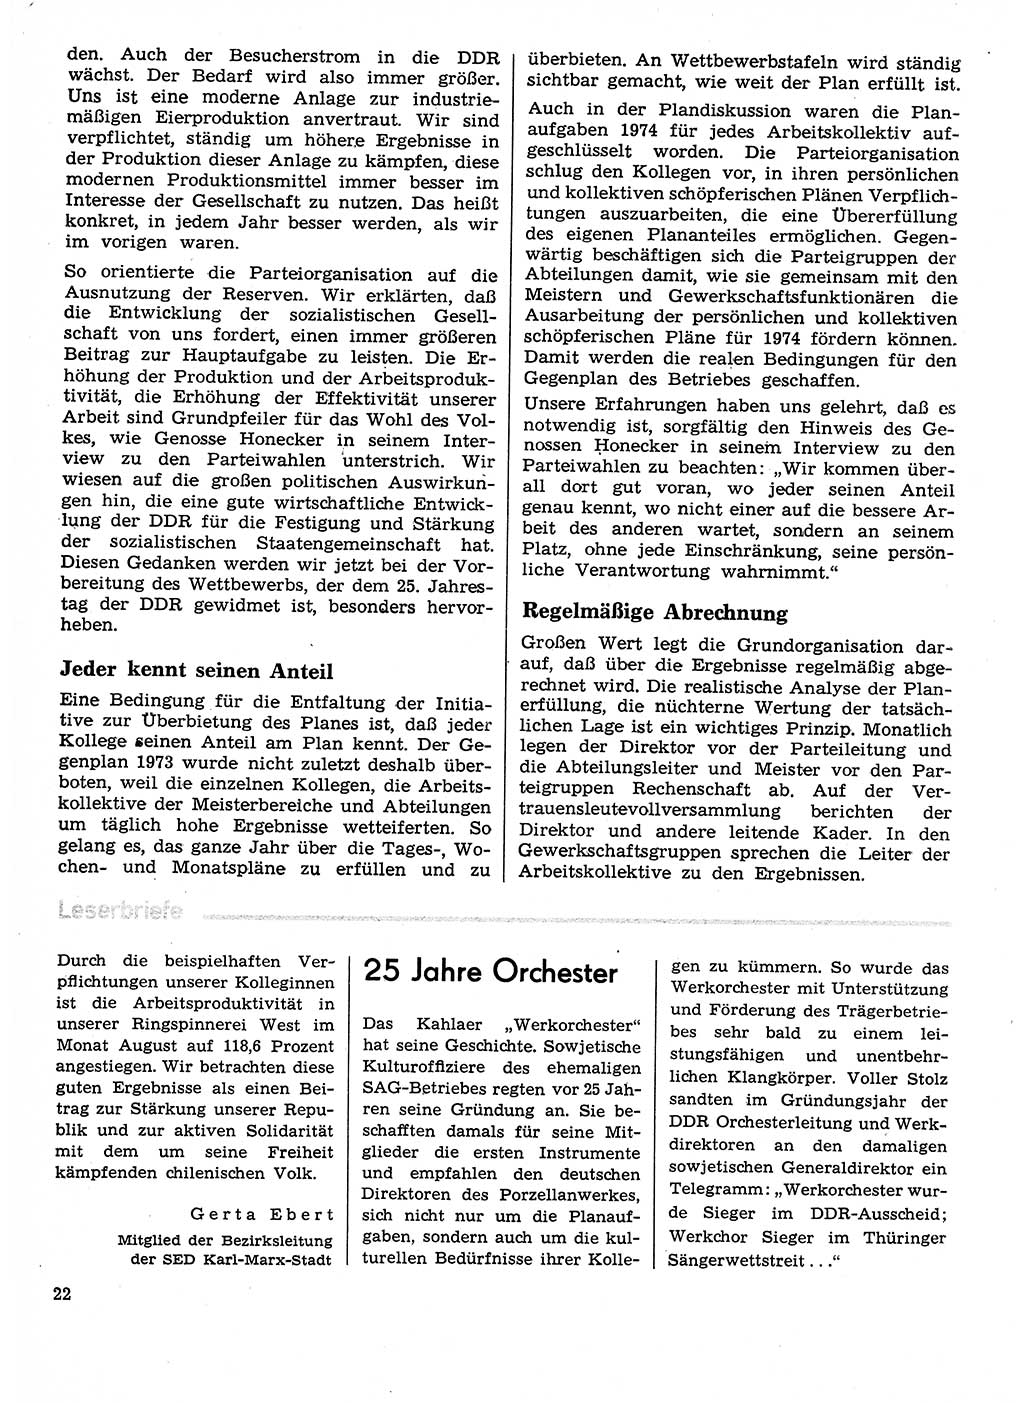 Neuer Weg (NW), Organ des Zentralkomitees (ZK) der SED (Sozialistische Einheitspartei Deutschlands) für Fragen des Parteilebens, 29. Jahrgang [Deutsche Demokratische Republik (DDR)] 1974, Seite 22 (NW ZK SED DDR 1974, S. 22)